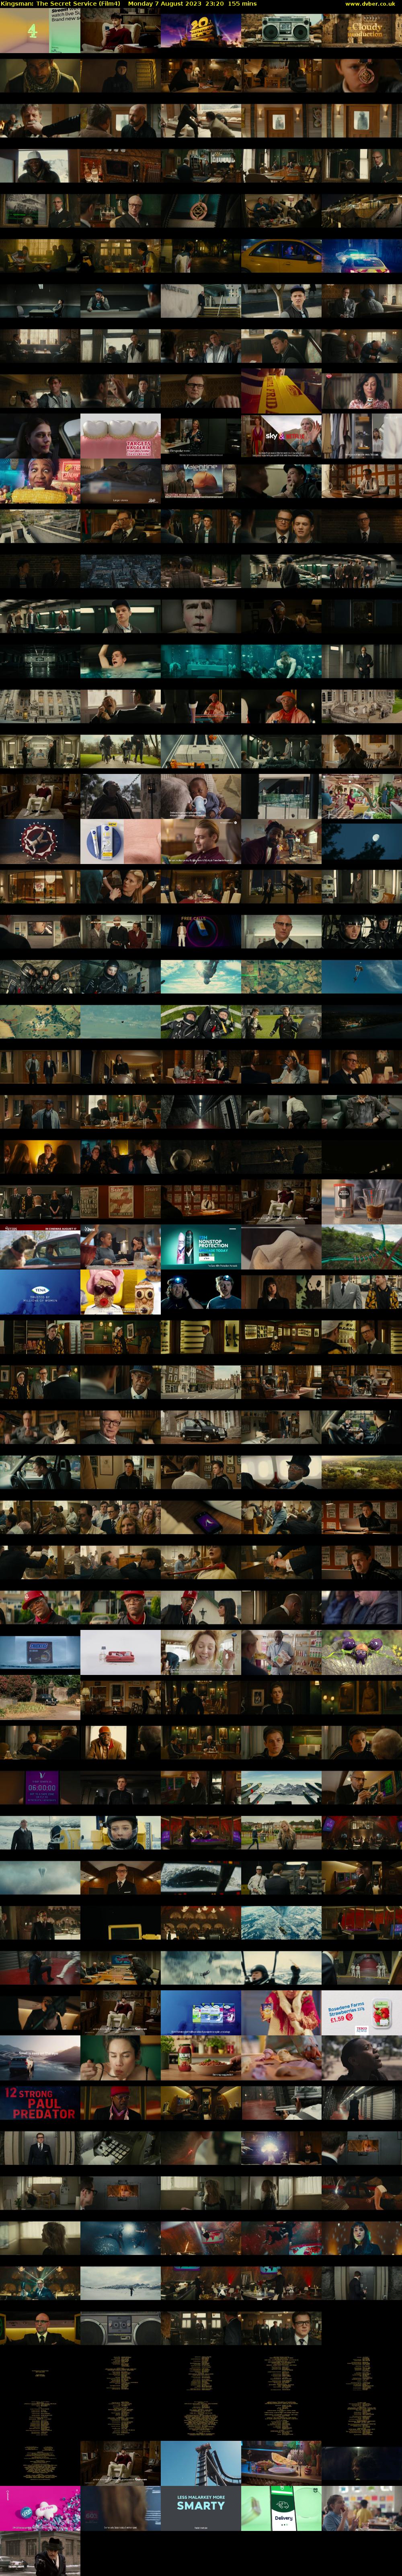 Kingsman: The Secret Service (Film4) Monday 7 August 2023 23:20 - 01:55